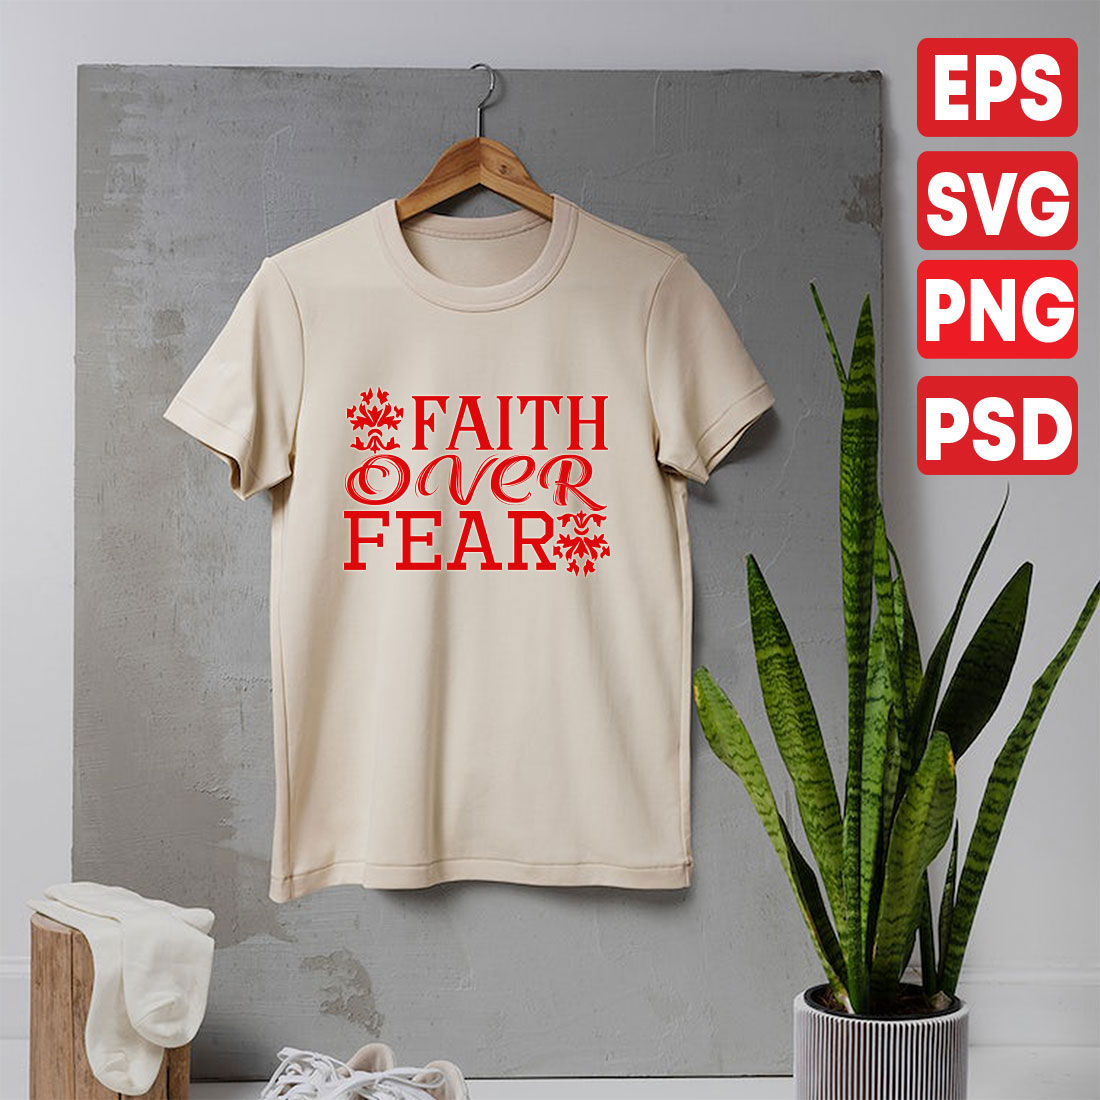 Faith-Over-Fear cover image.